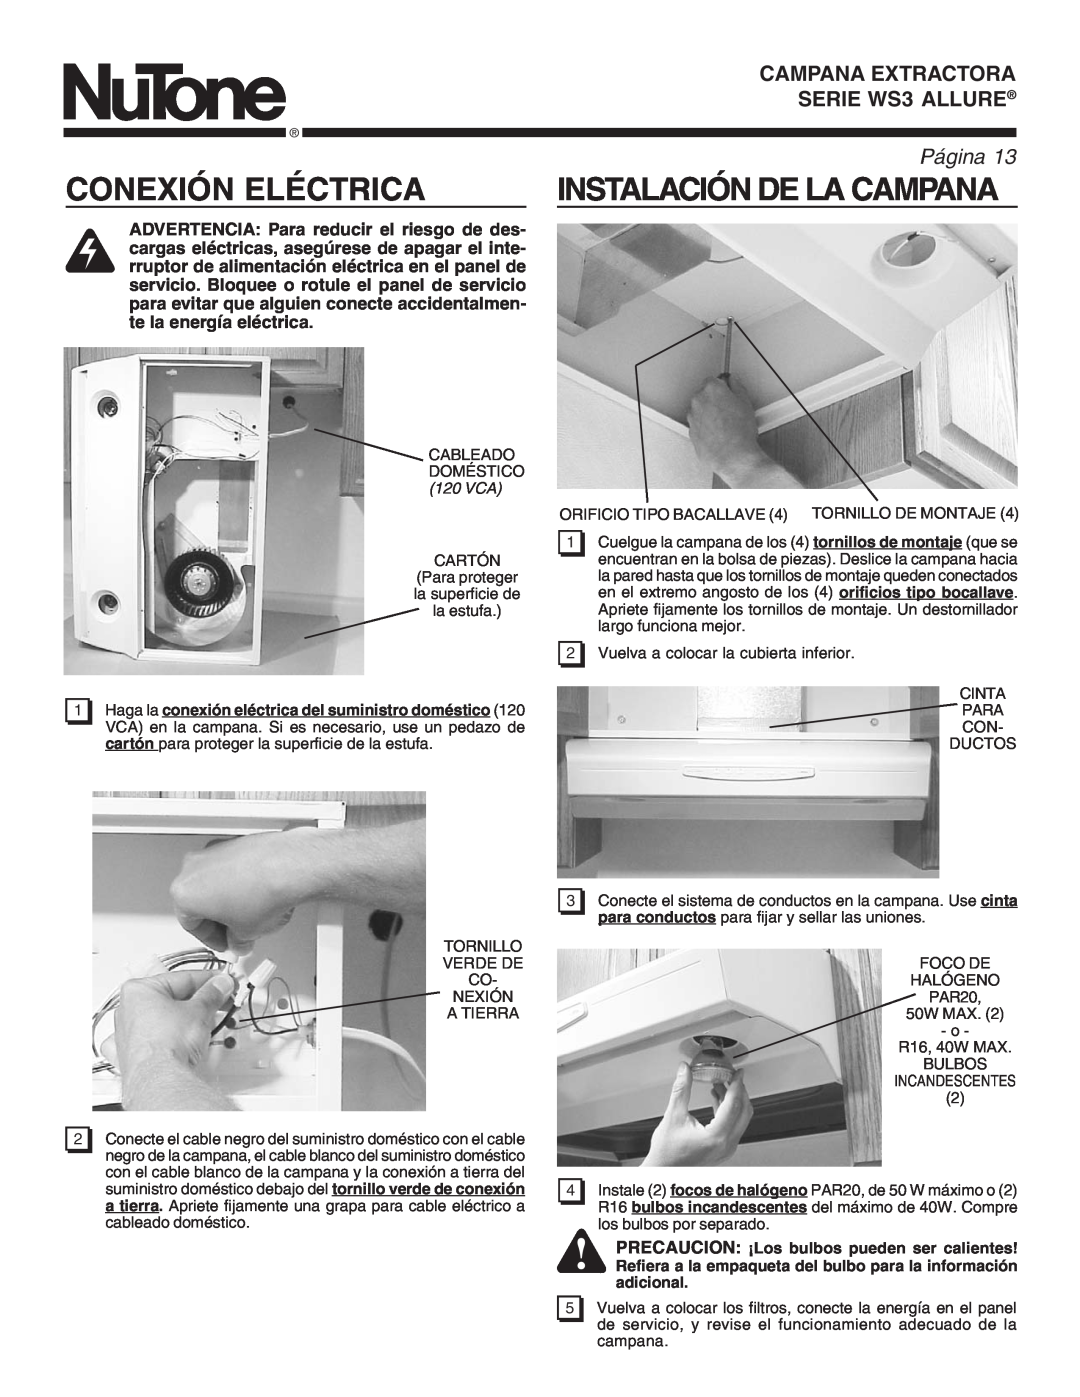 NuTone manual Conexión Eléctrica, PáginaPage, adicional, Instalación De La Campana, SERIE WS3RANGEALLUREHOOD 